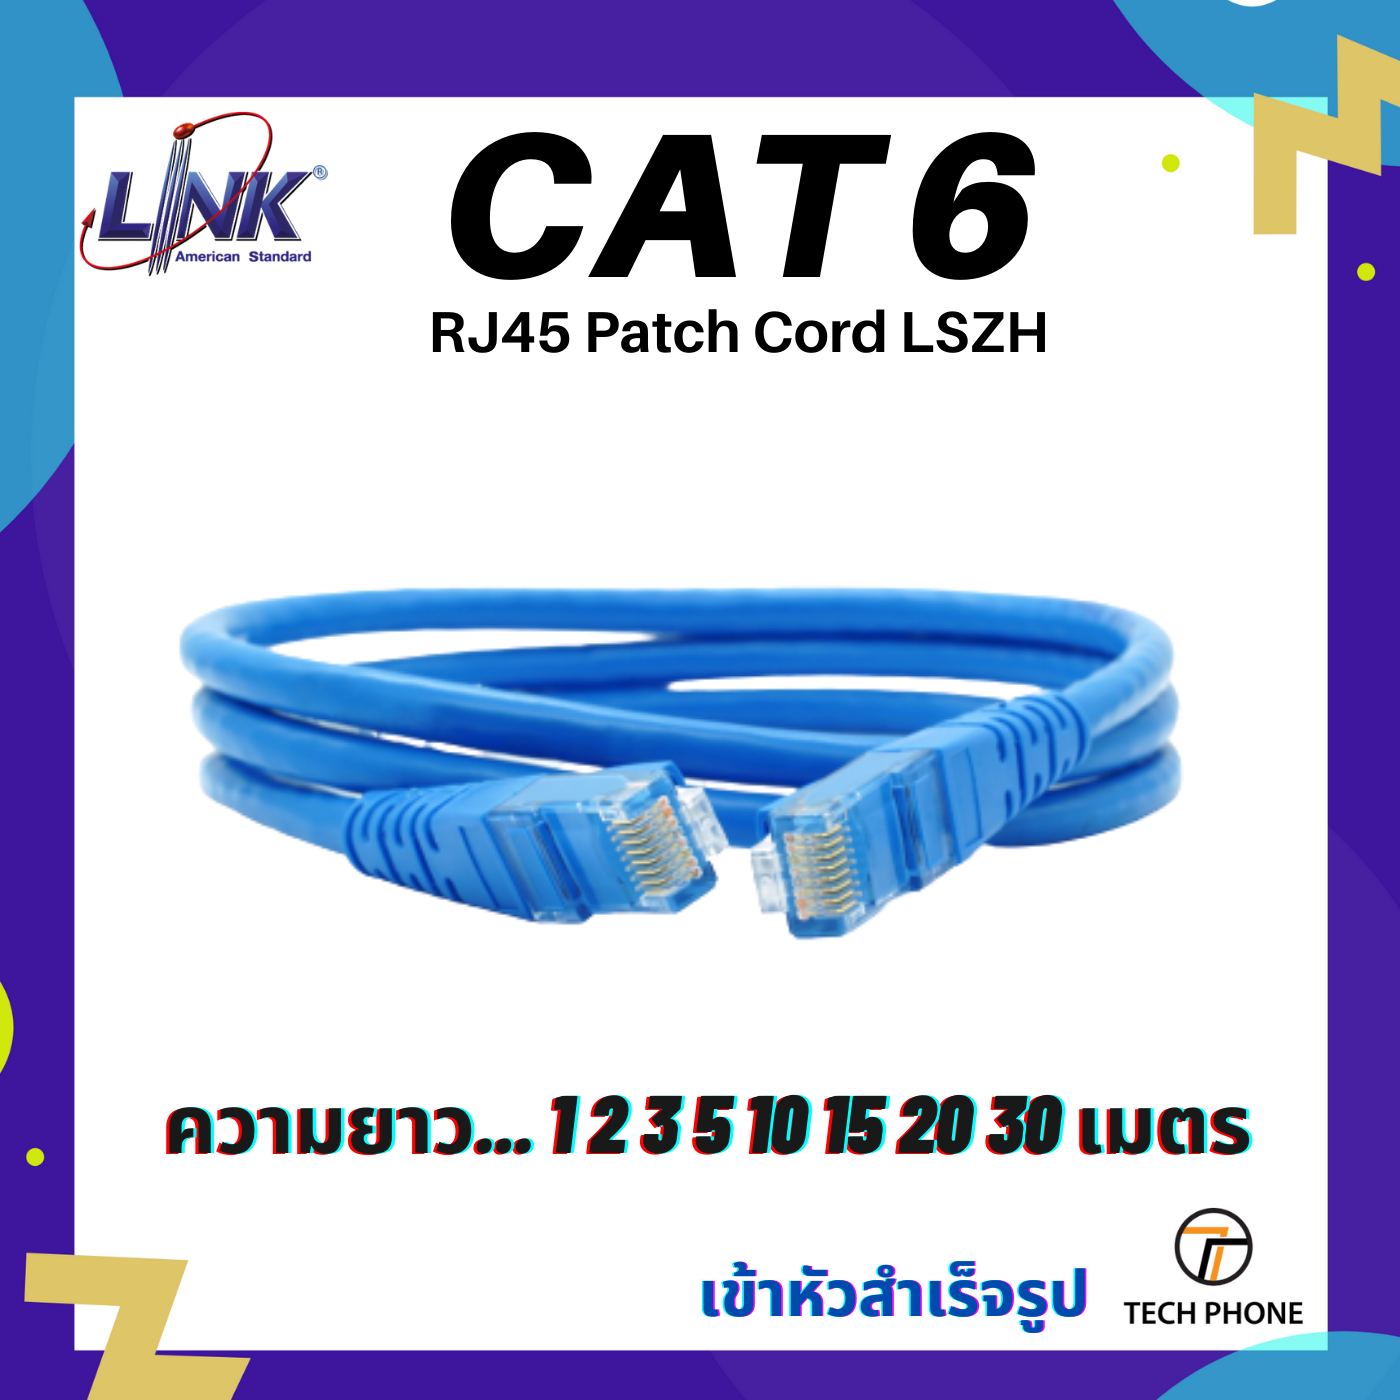 สายแลน LINK CAT 6 Lan Cable ยาว 1 2 3 5 10 15 20 30 40 เมตร เข้าหัวสำเร็จรูป สี ฟ้า แดง ขาว เหลือง เขียว Lan Cable RJ45 Patch Cord LSZH Lan Cable